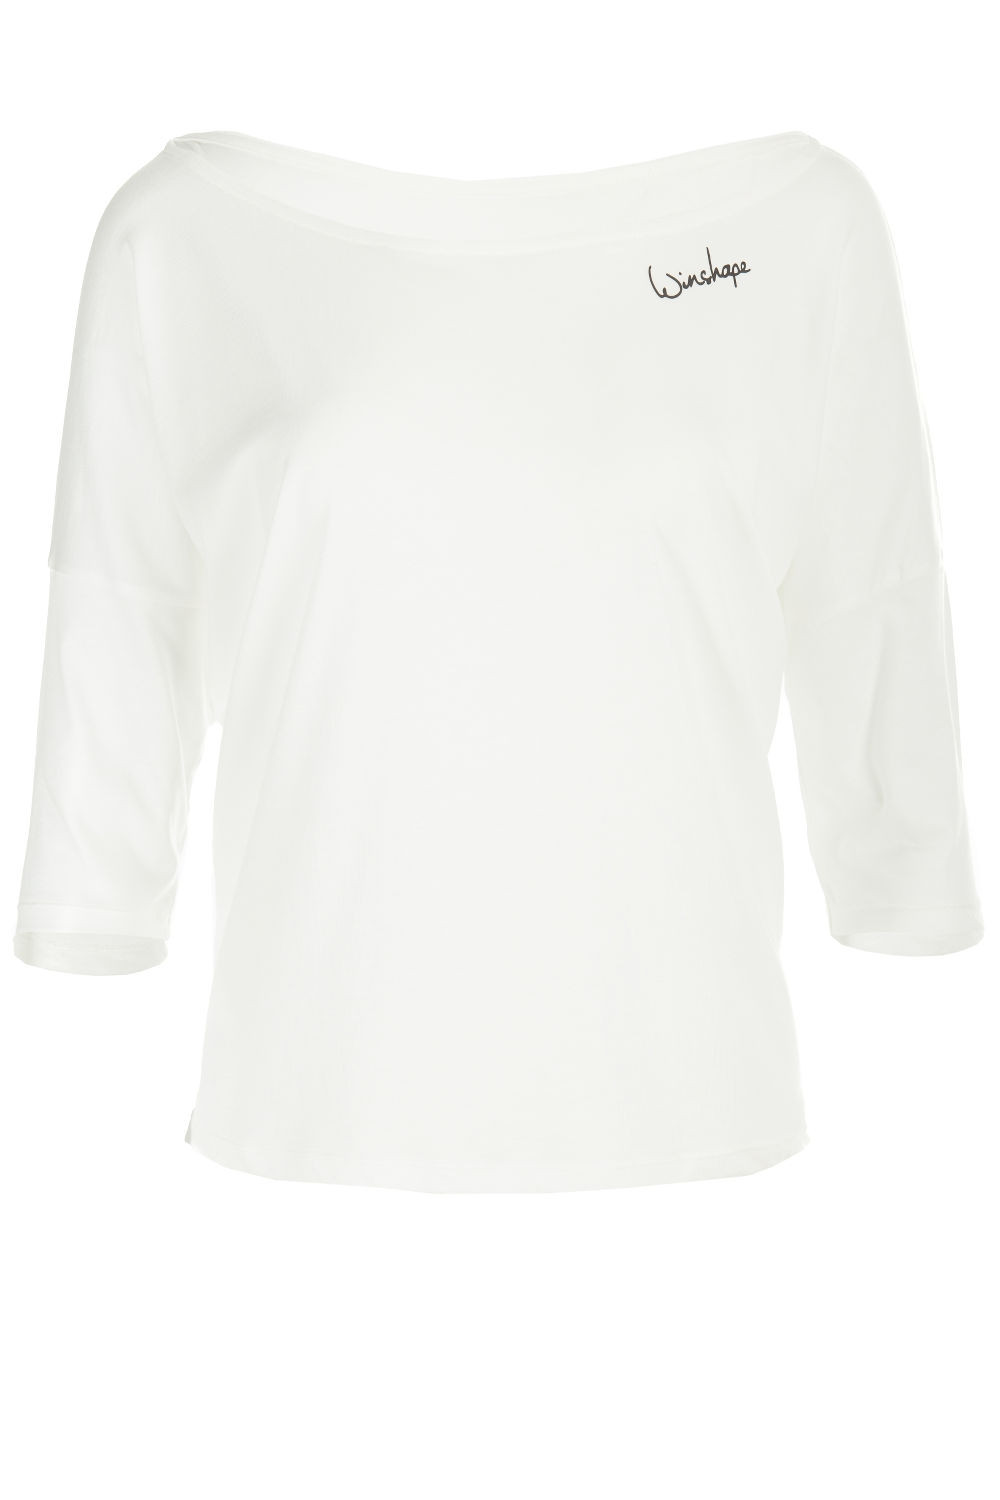 Dance Shirt Style weiß, Winshape Modal-3/4-Arm MCS001, vanilla leichtes Ultra